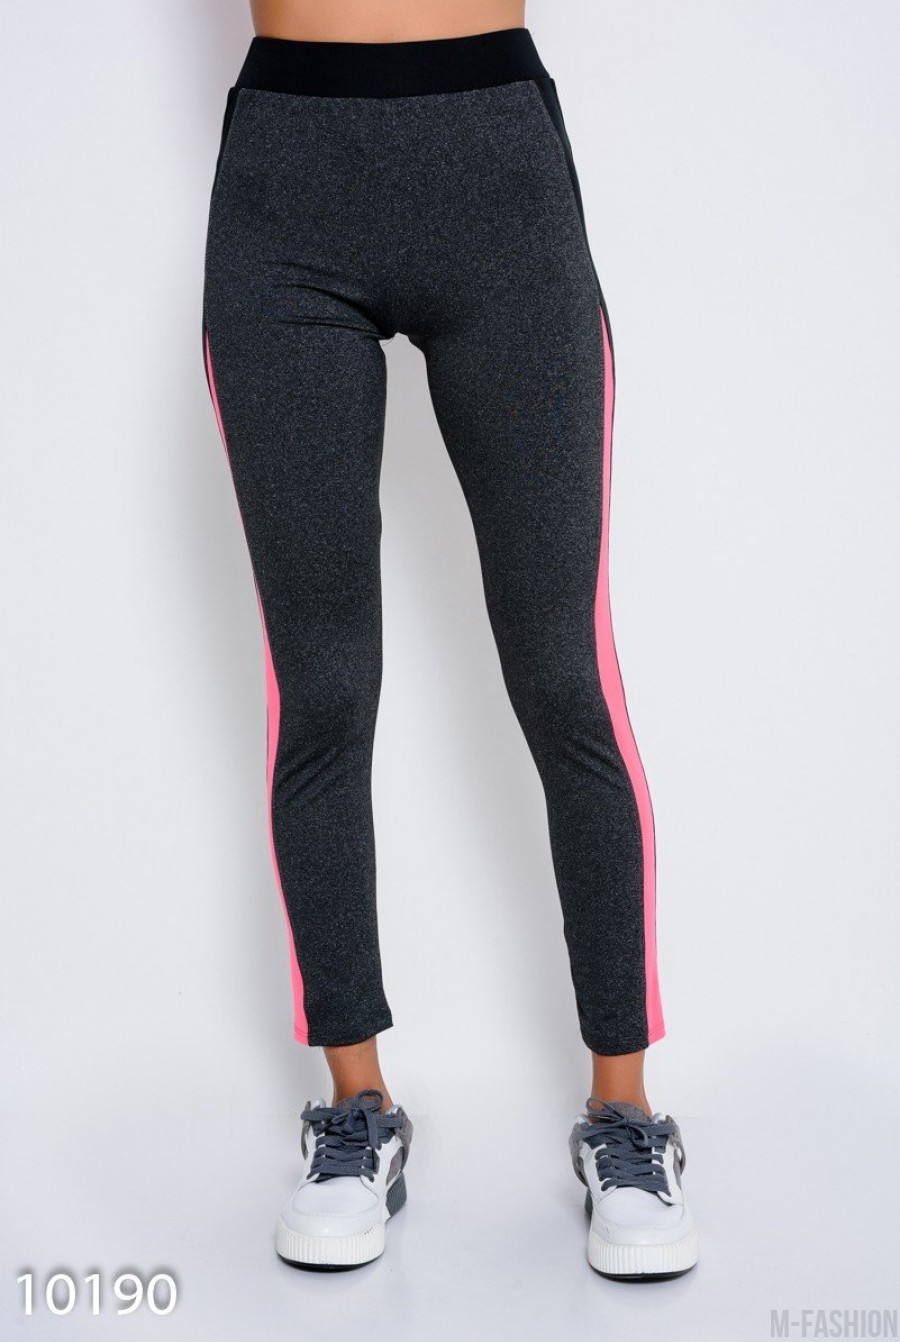 Темно-серые эластичные спортивные штаны с черными и розовыми вставка по бокам - Фото 1